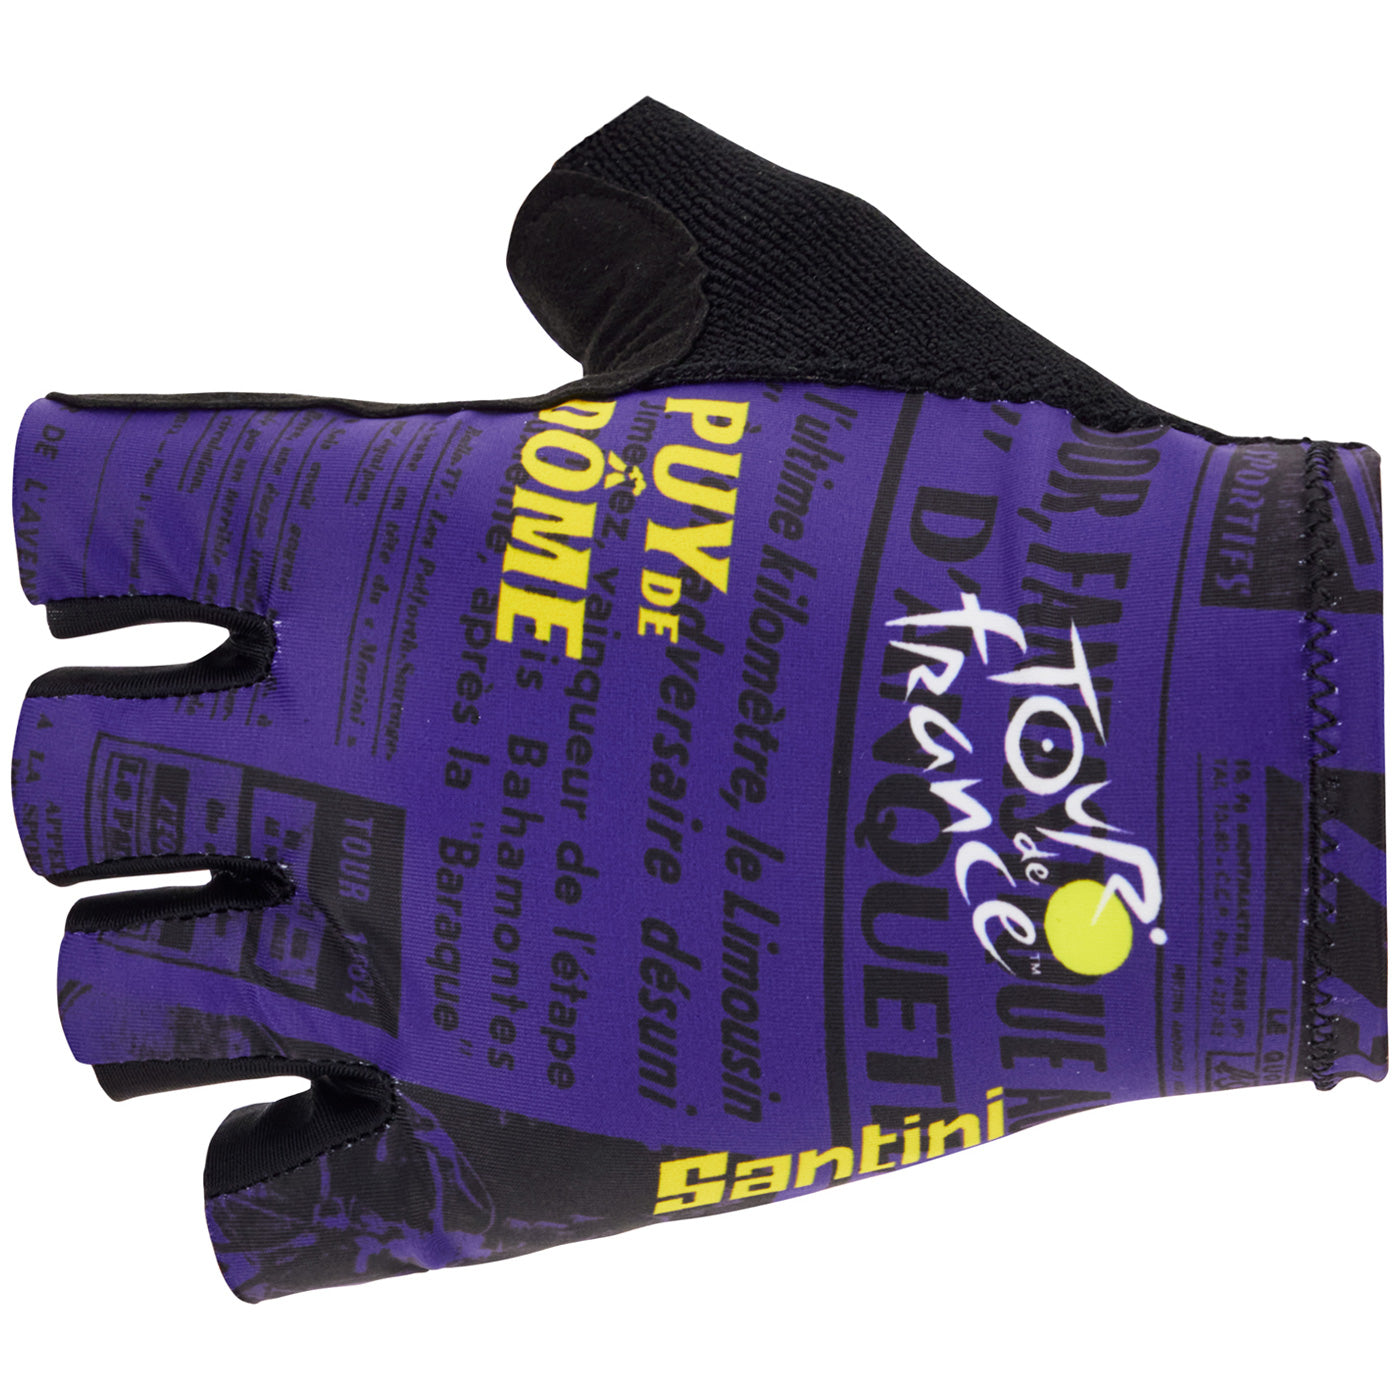 Tour de France gloves - Puy de Dome